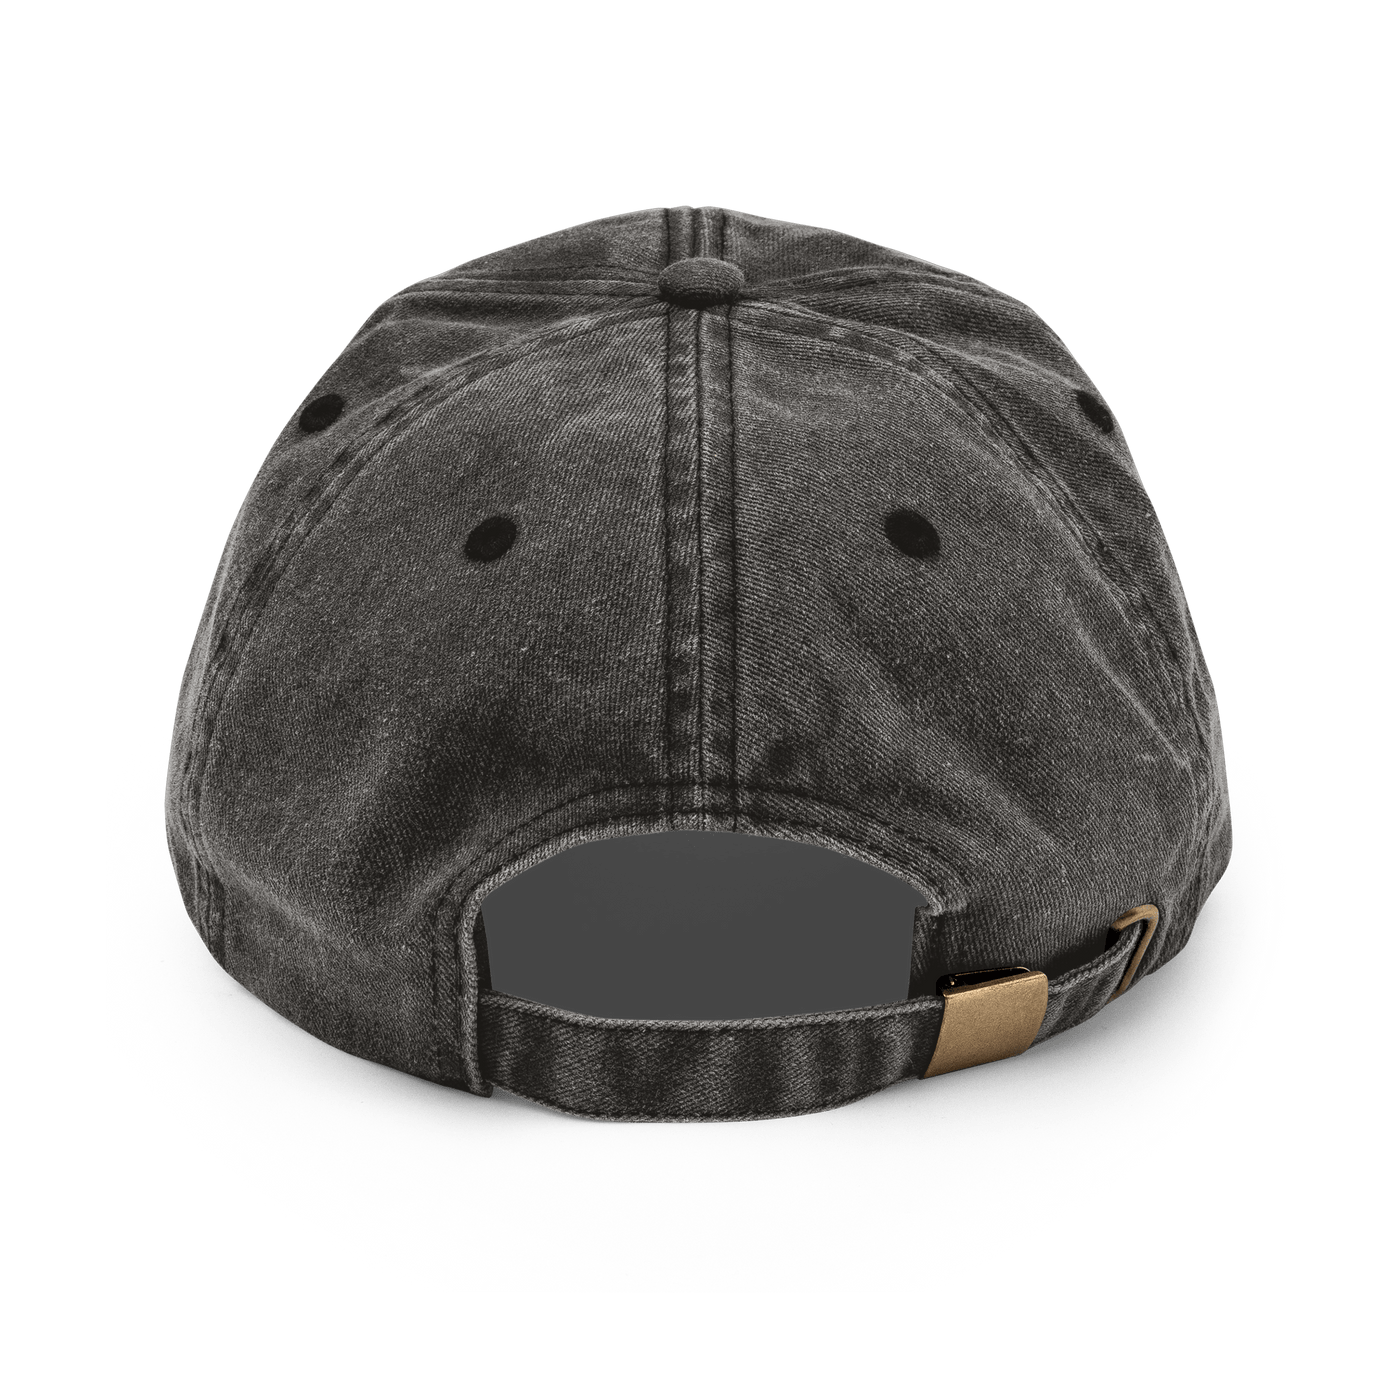 Dalahäst Vintage Hat - Vintage Black - Just Another Cap Store